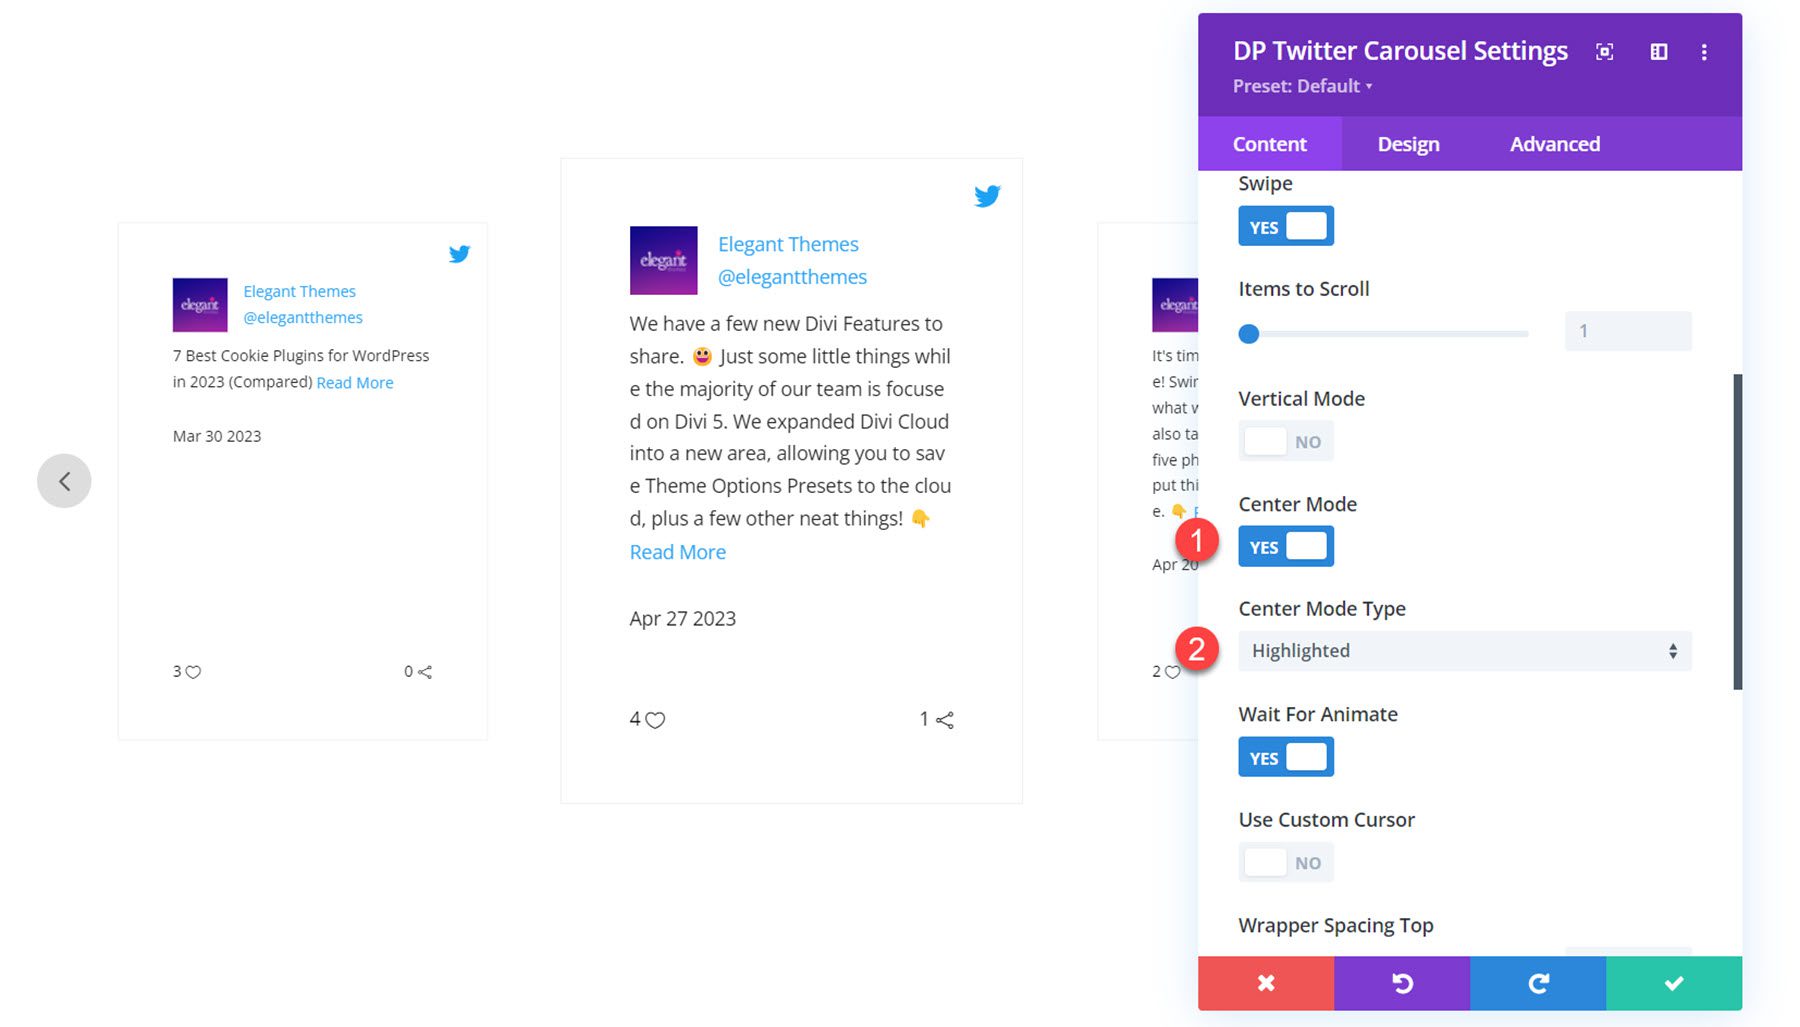 Divi Social Plus Twitter Carousel Center Mode